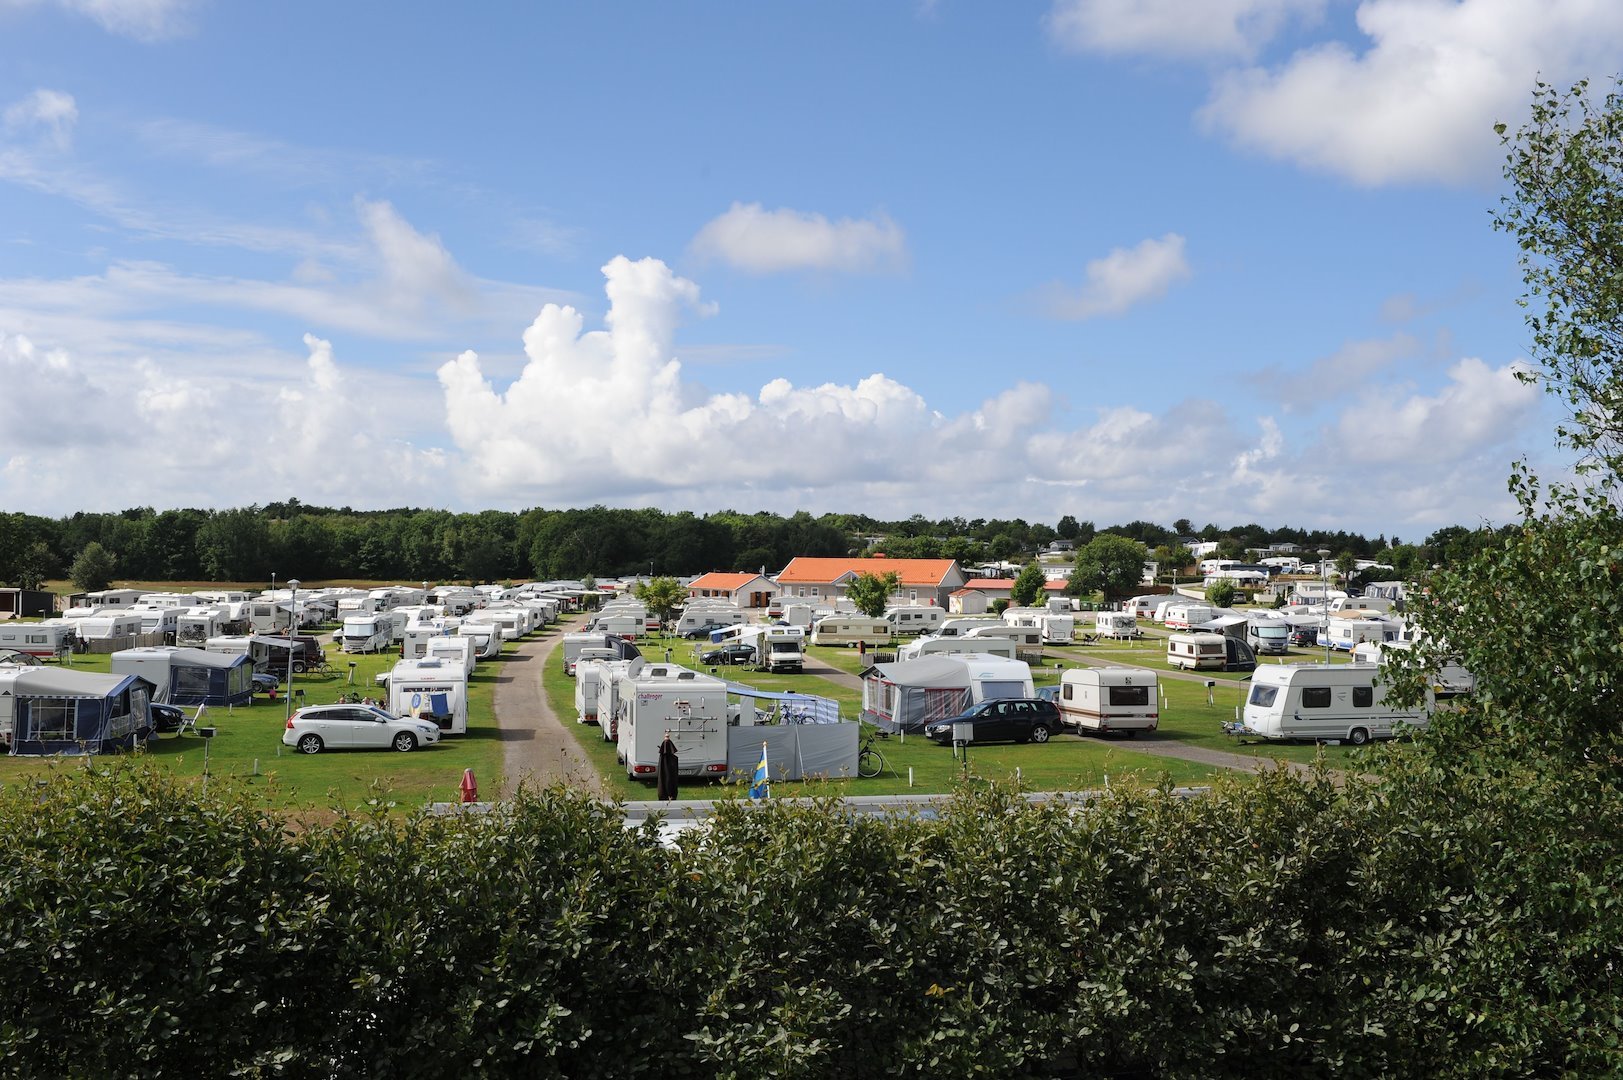 Camping Stellplatz Wohnwagen/Wohnmobil/Zelt mit Strom - Gras